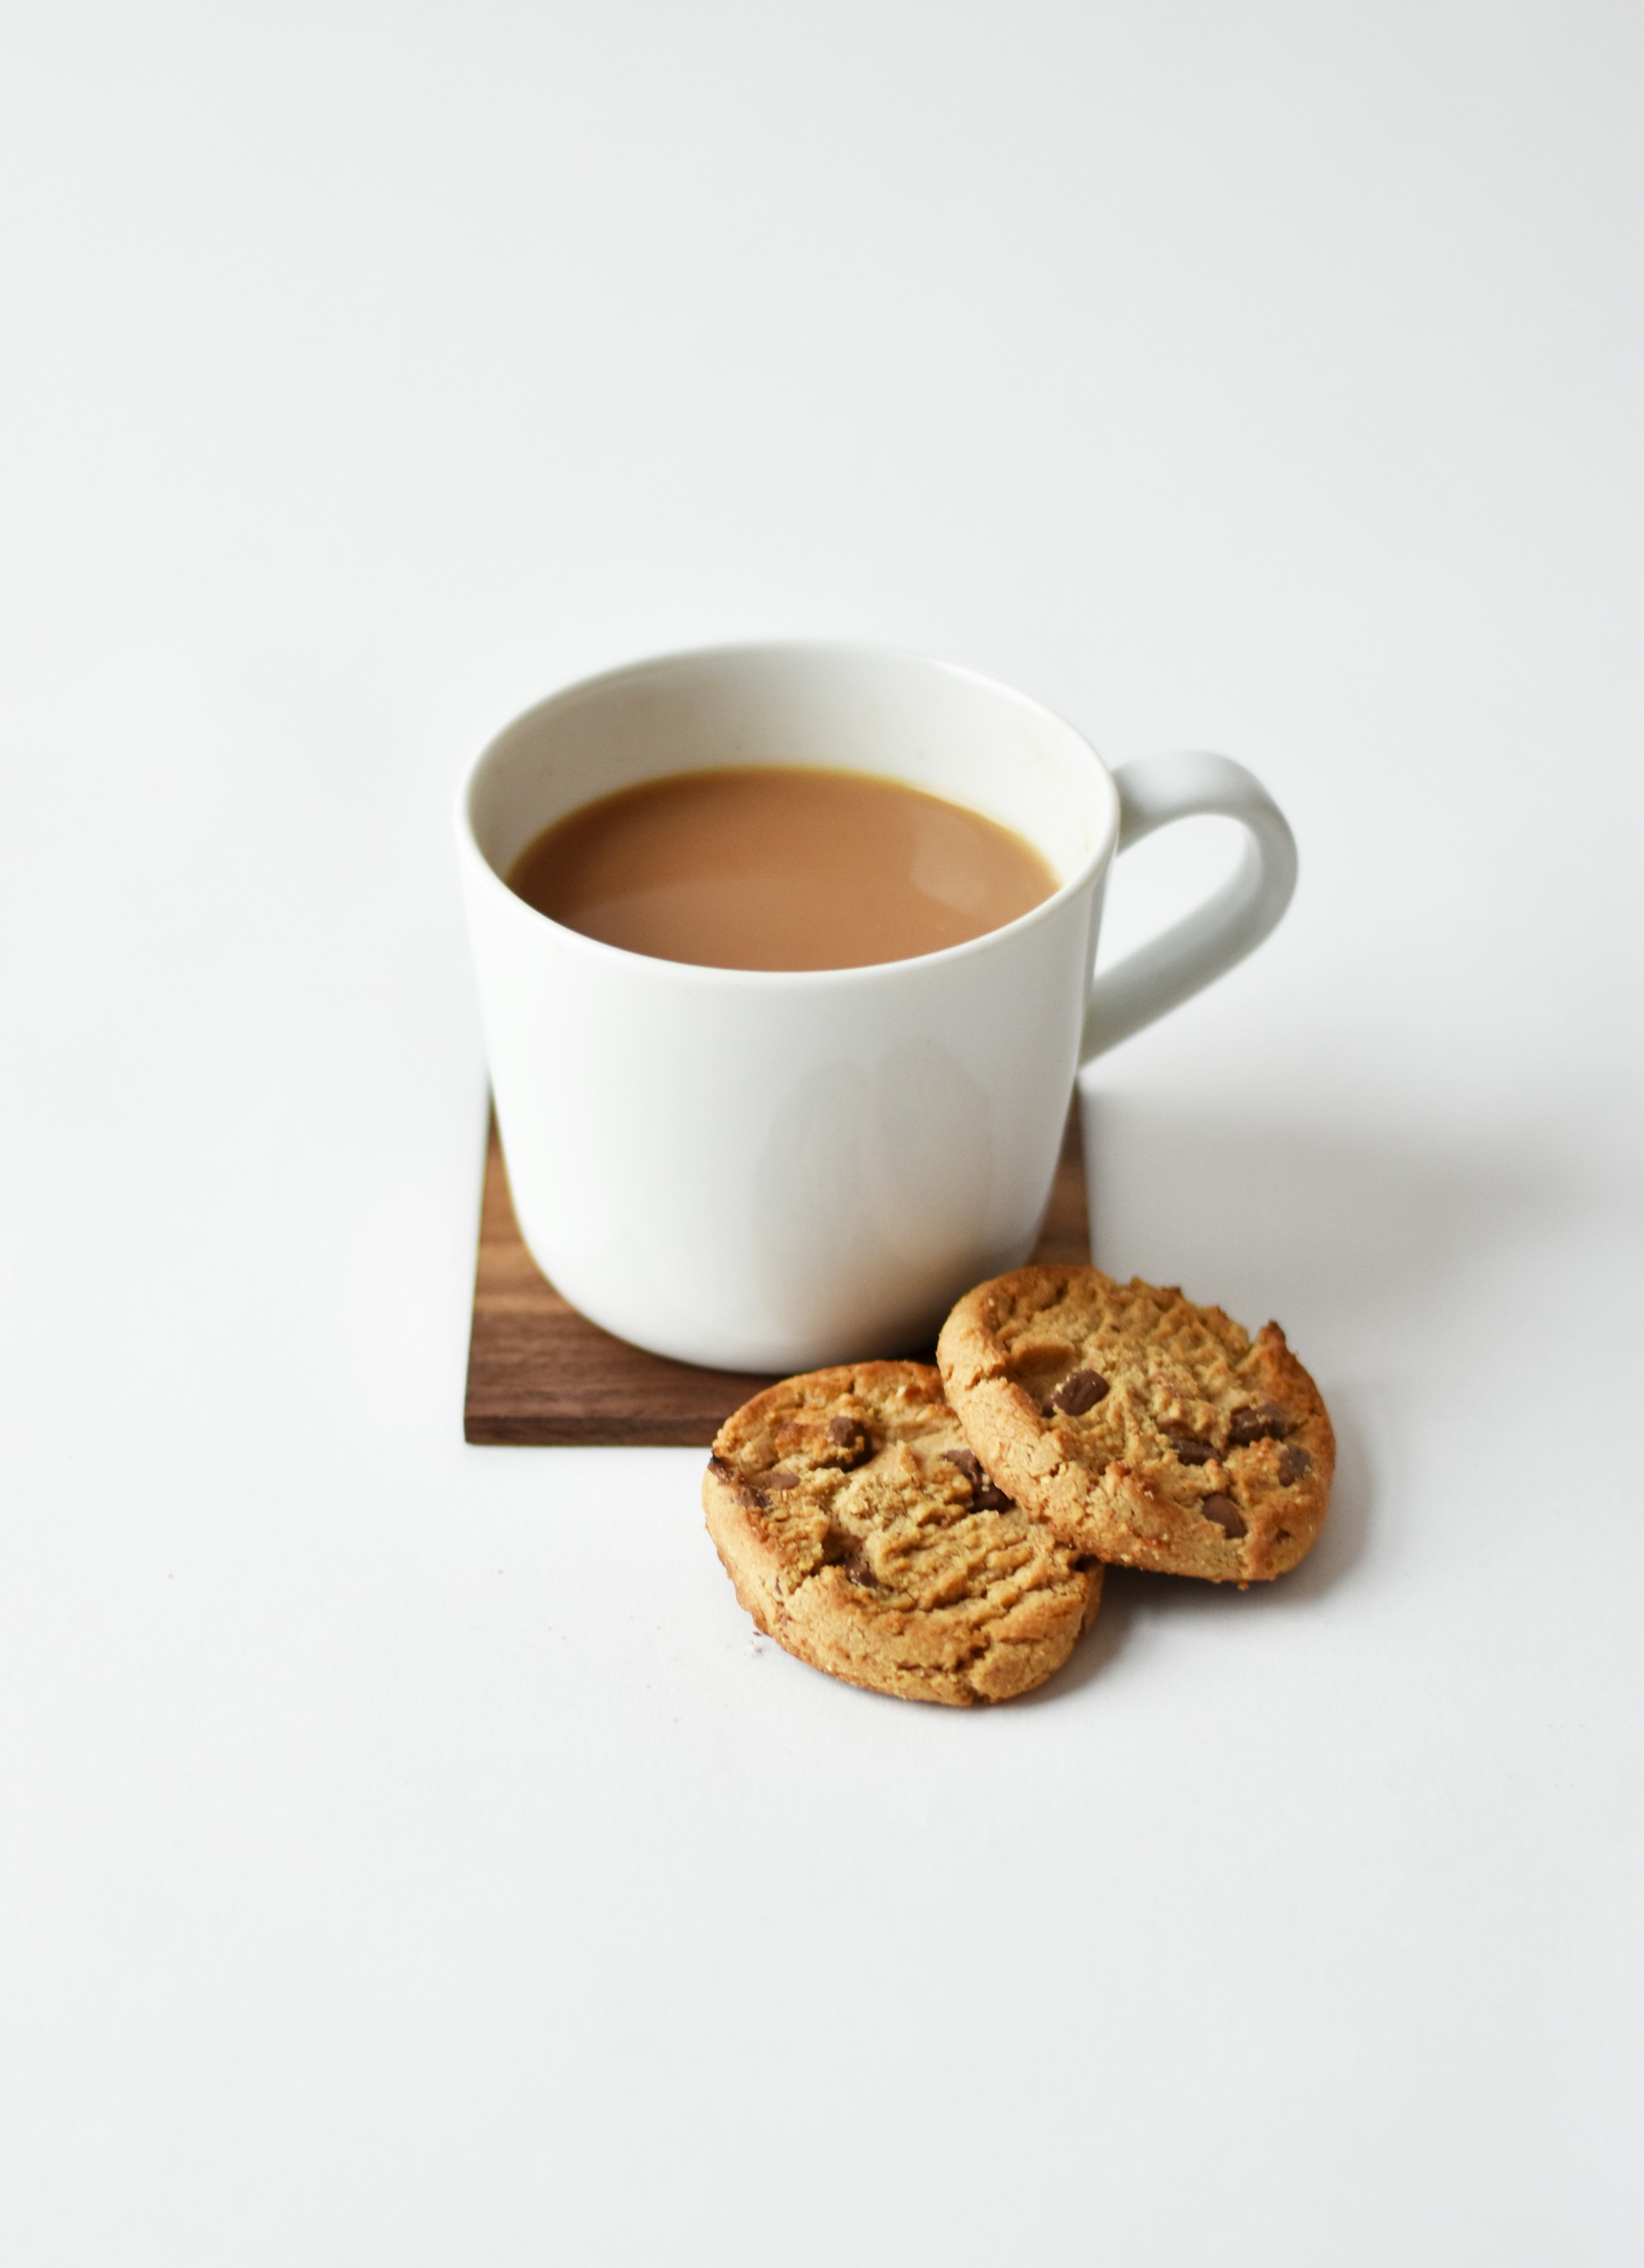 Une tasse de thé avec des biscuits | Source : Unsplash